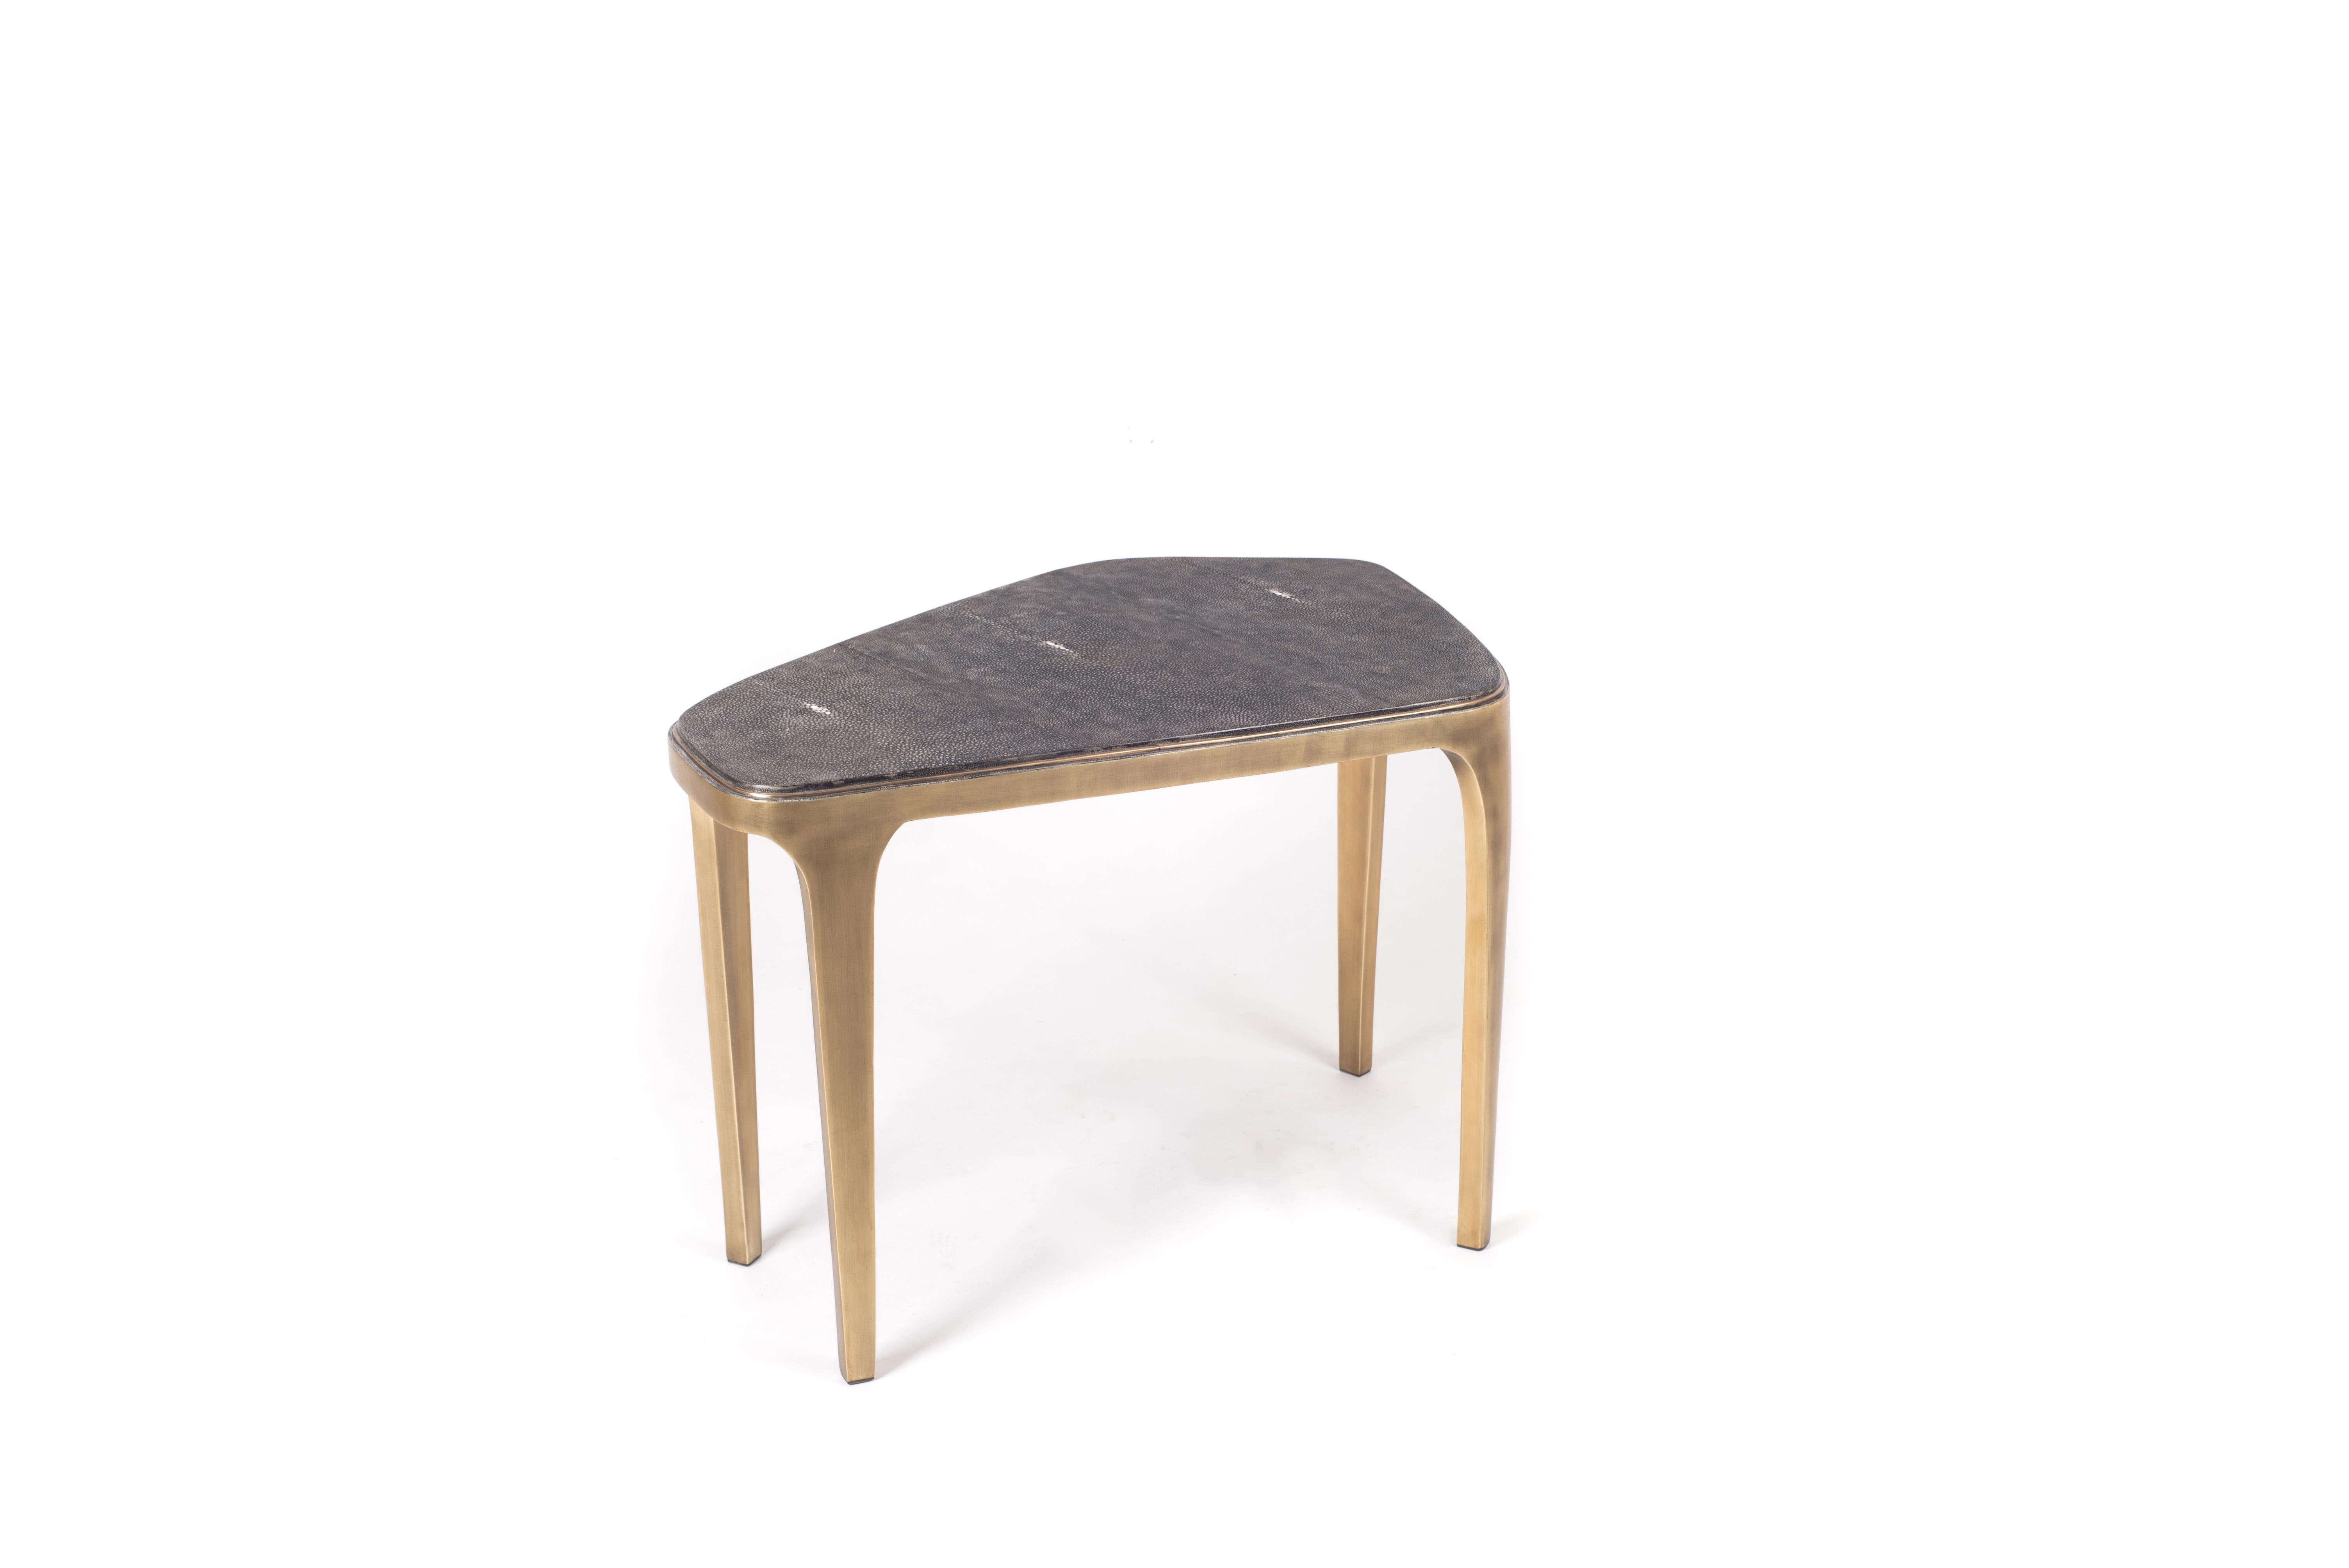 La table basse gigogne Cosmos est à la fois minimaliste et spectaculaire. Le plateau est incrusté de galuchat noir, teinté à la main par les artisans, et complété par du laiton bronze-patiné. Le designer appelle cette finition le galuchat 